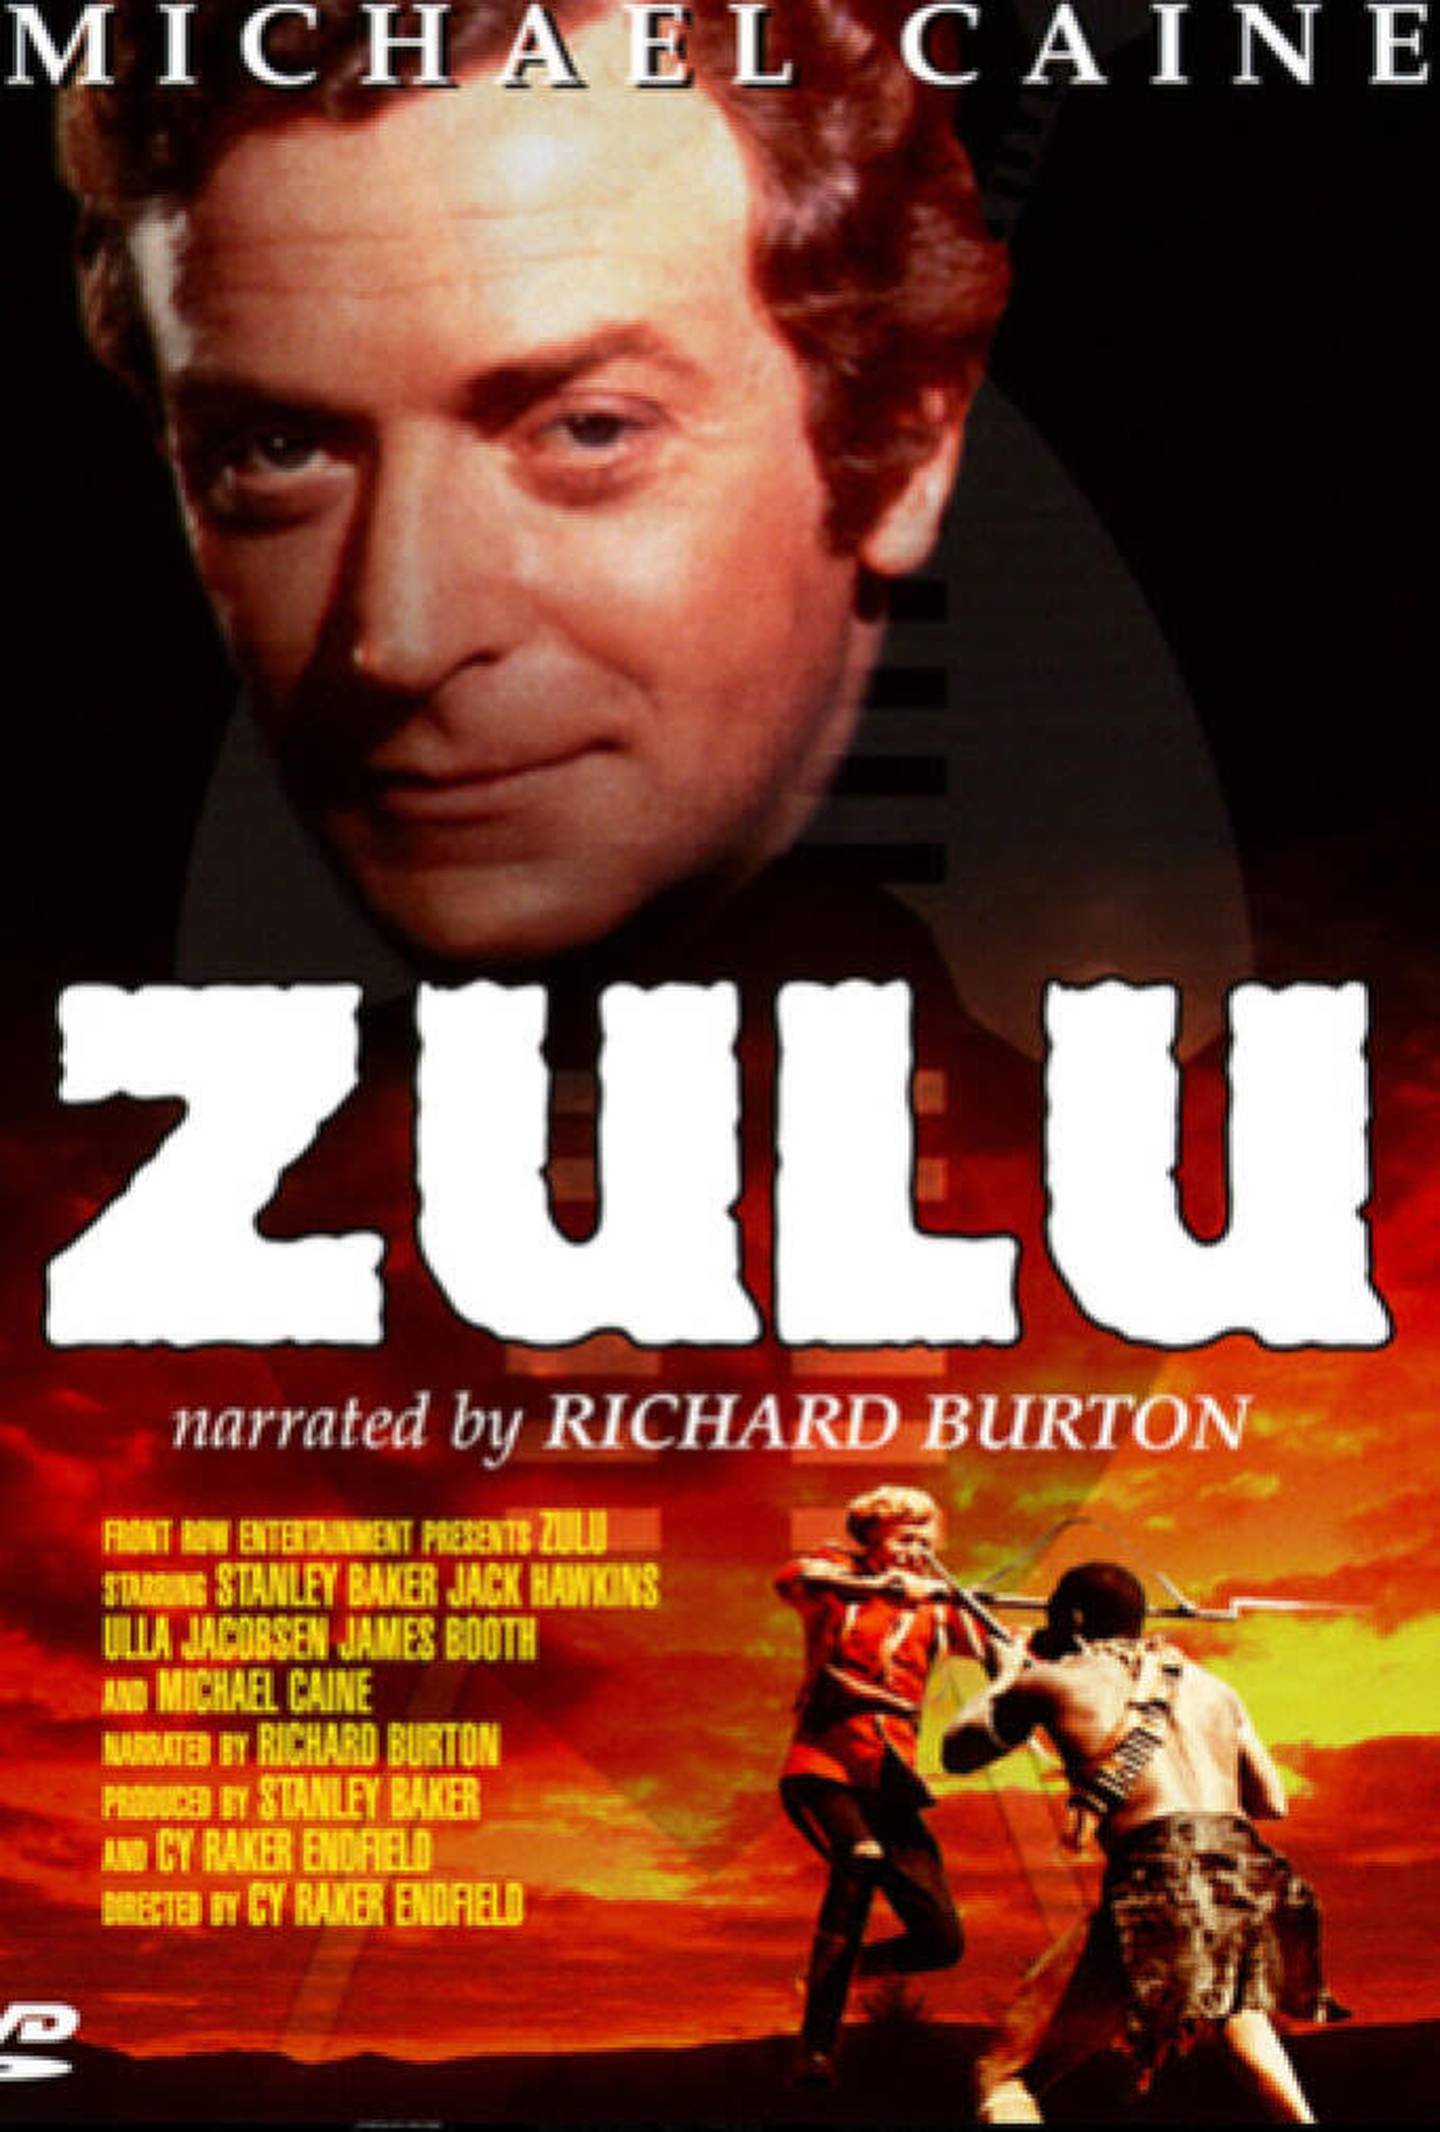 Un joven Michael Caine impresionó con su participación en la película 'Zulu'. Foto: Imdb